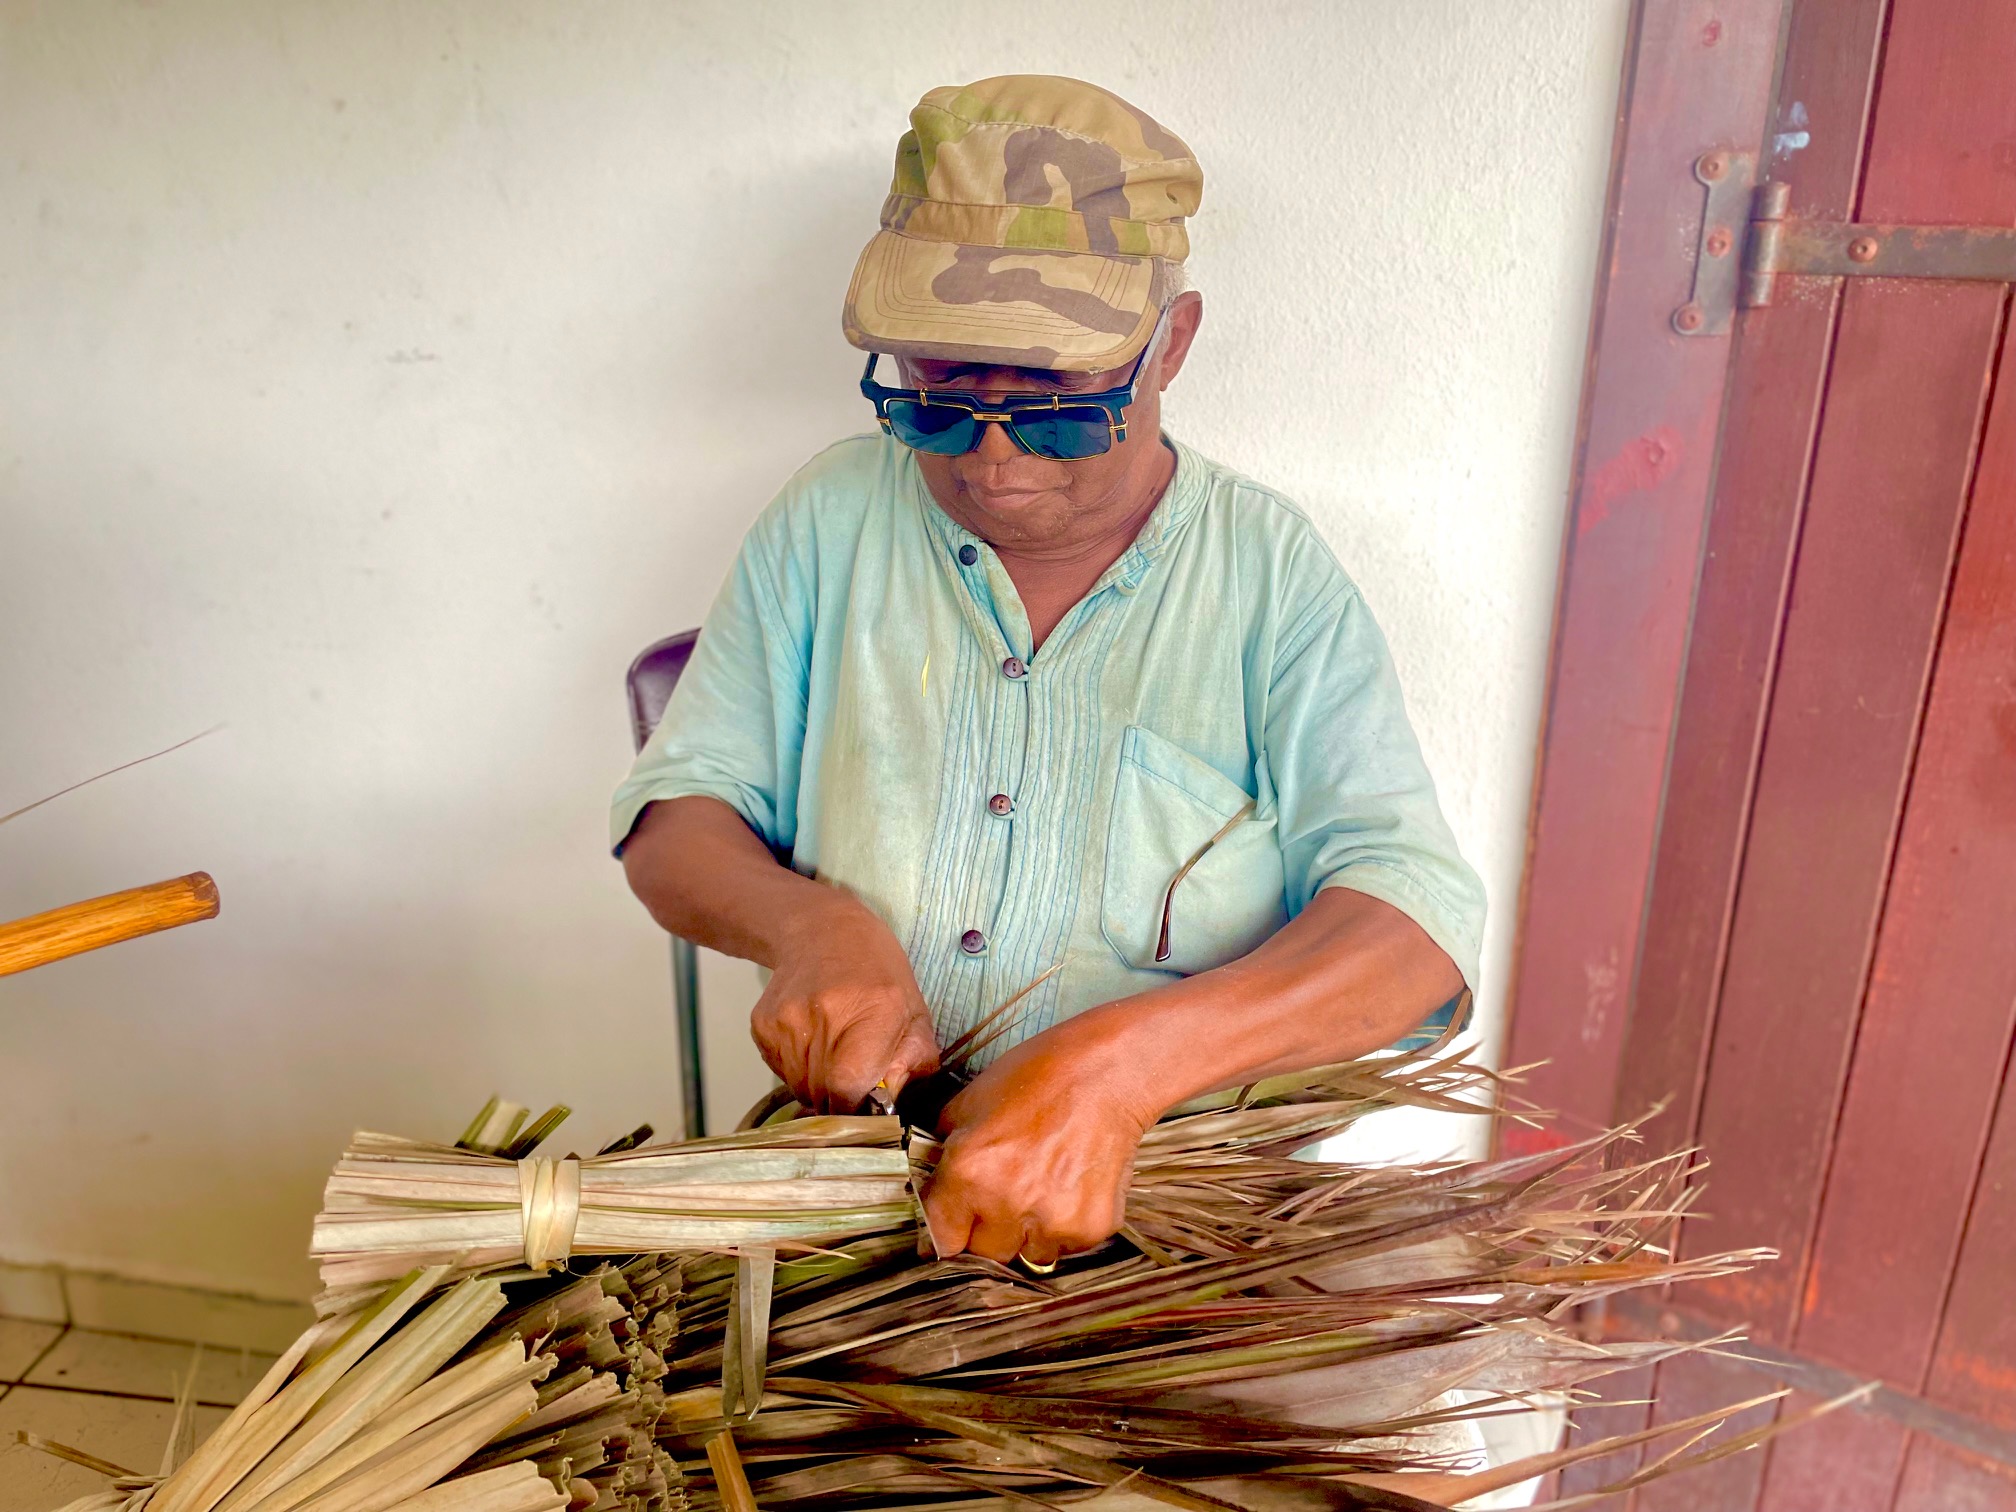     [PORTRAIT 1/5] Michael Flessel perpétue le savoir-faire artisanal des balais traditionnels

